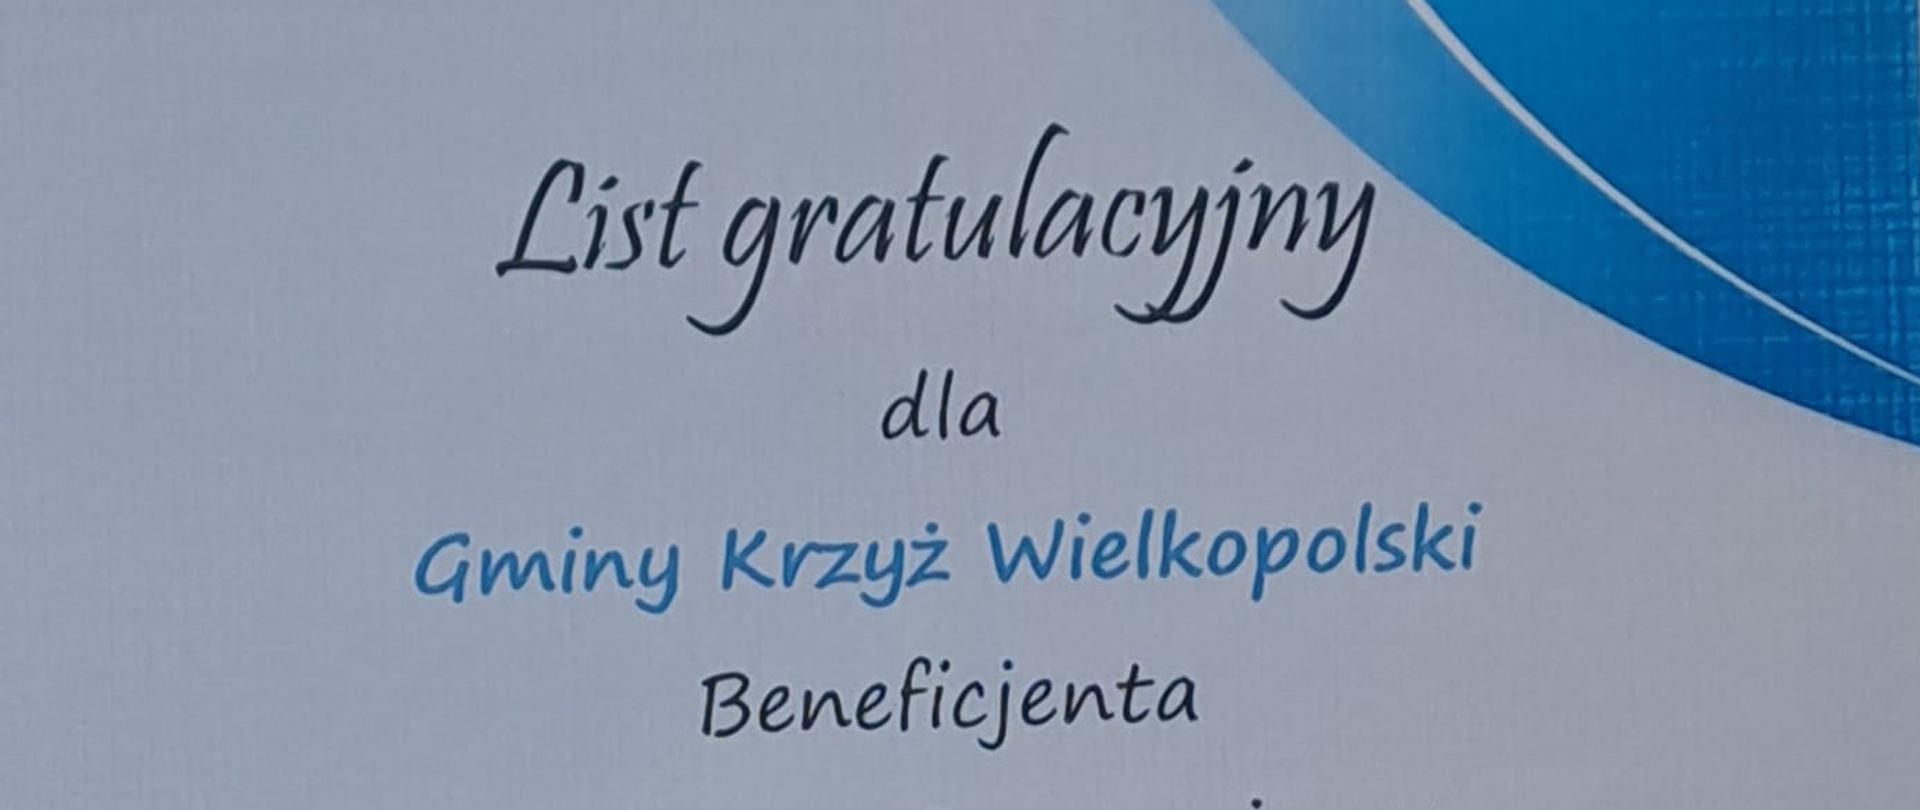 List gratulacyjny "Wiata Rekreacyjna nad Jeziorem Królewskim" - Nadnotecka Grupa Rybacka